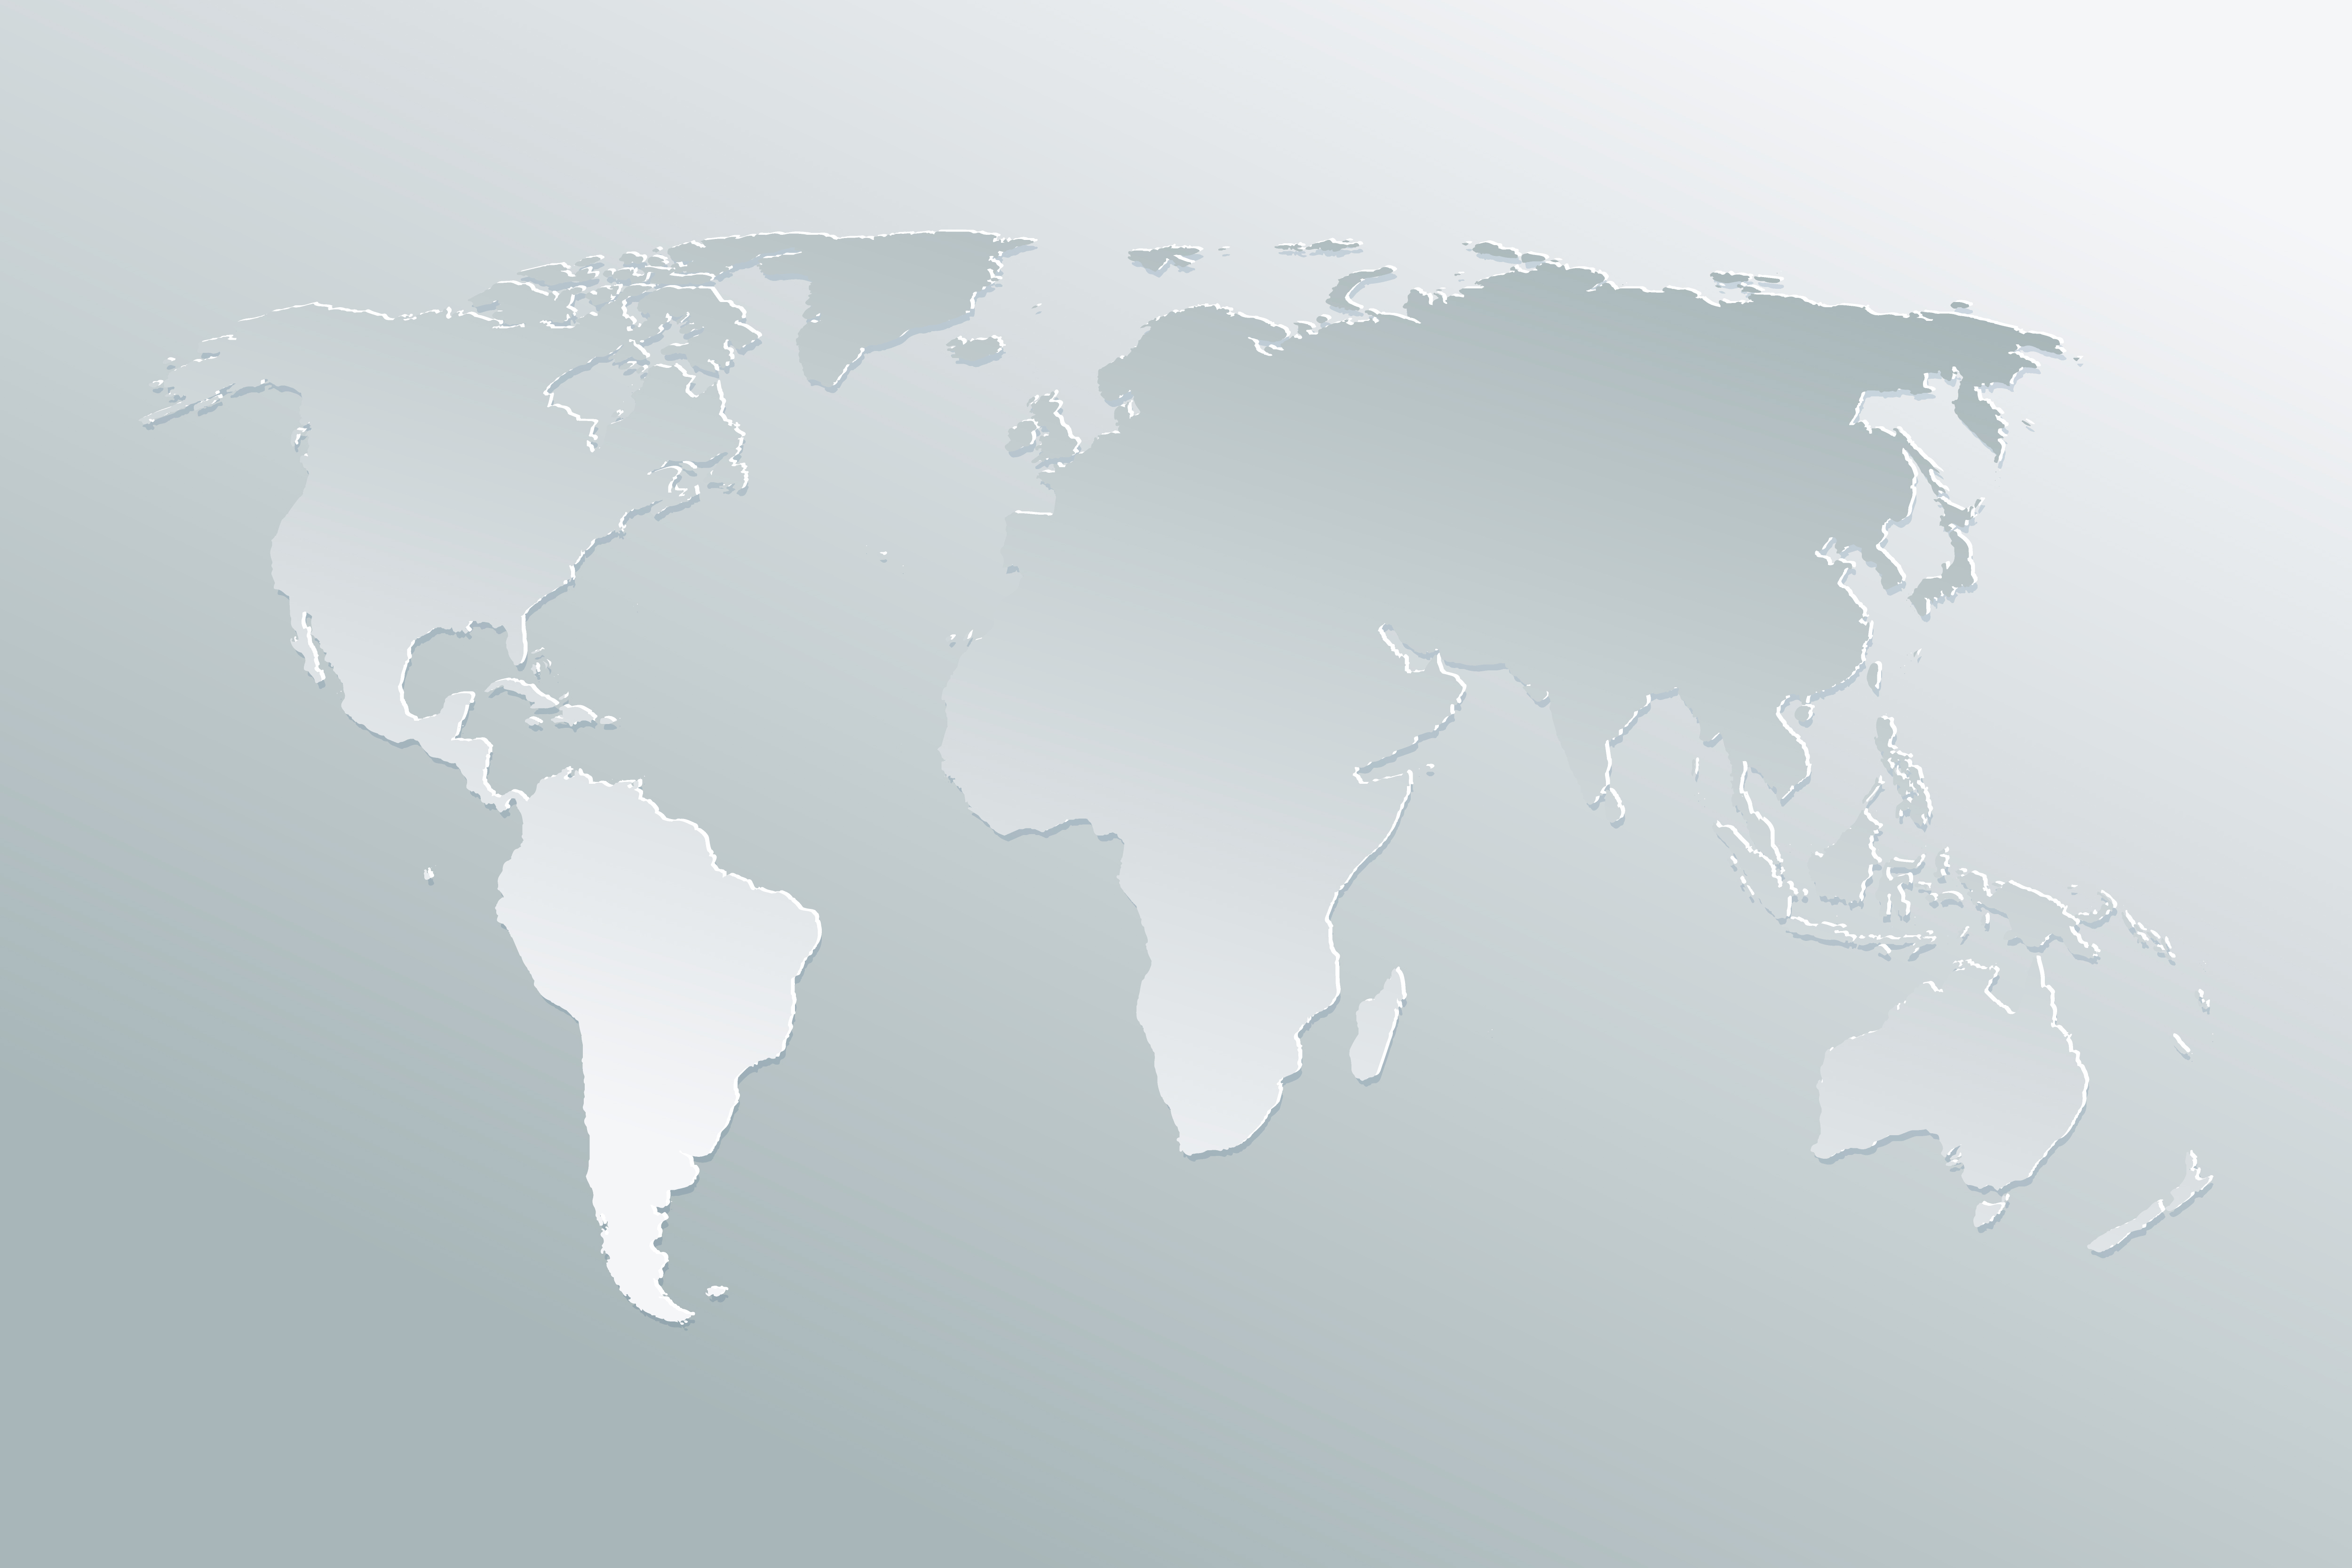 zwart Pool Dierentuin s nachts Politieke papieren kaart van de wereld op een grijze achtergrond.  Papierkunst wereldkaart. 570755 Vectorkunst bij Vecteezy